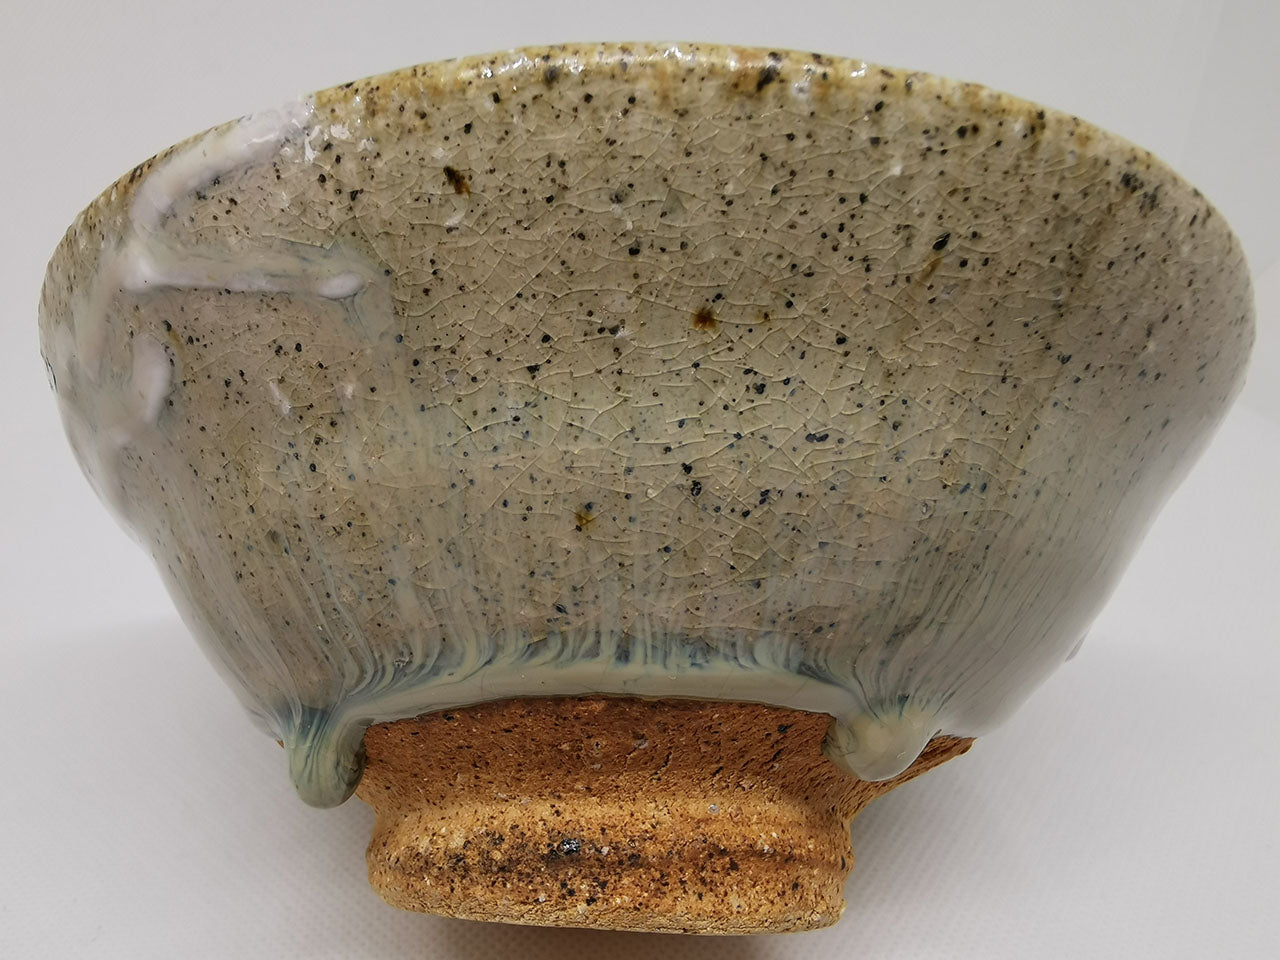 Tea ceremony utensils, Blue karatsu Matcha tea bowl - Raizan Yasunaga, Karatsu ware, Ceramics